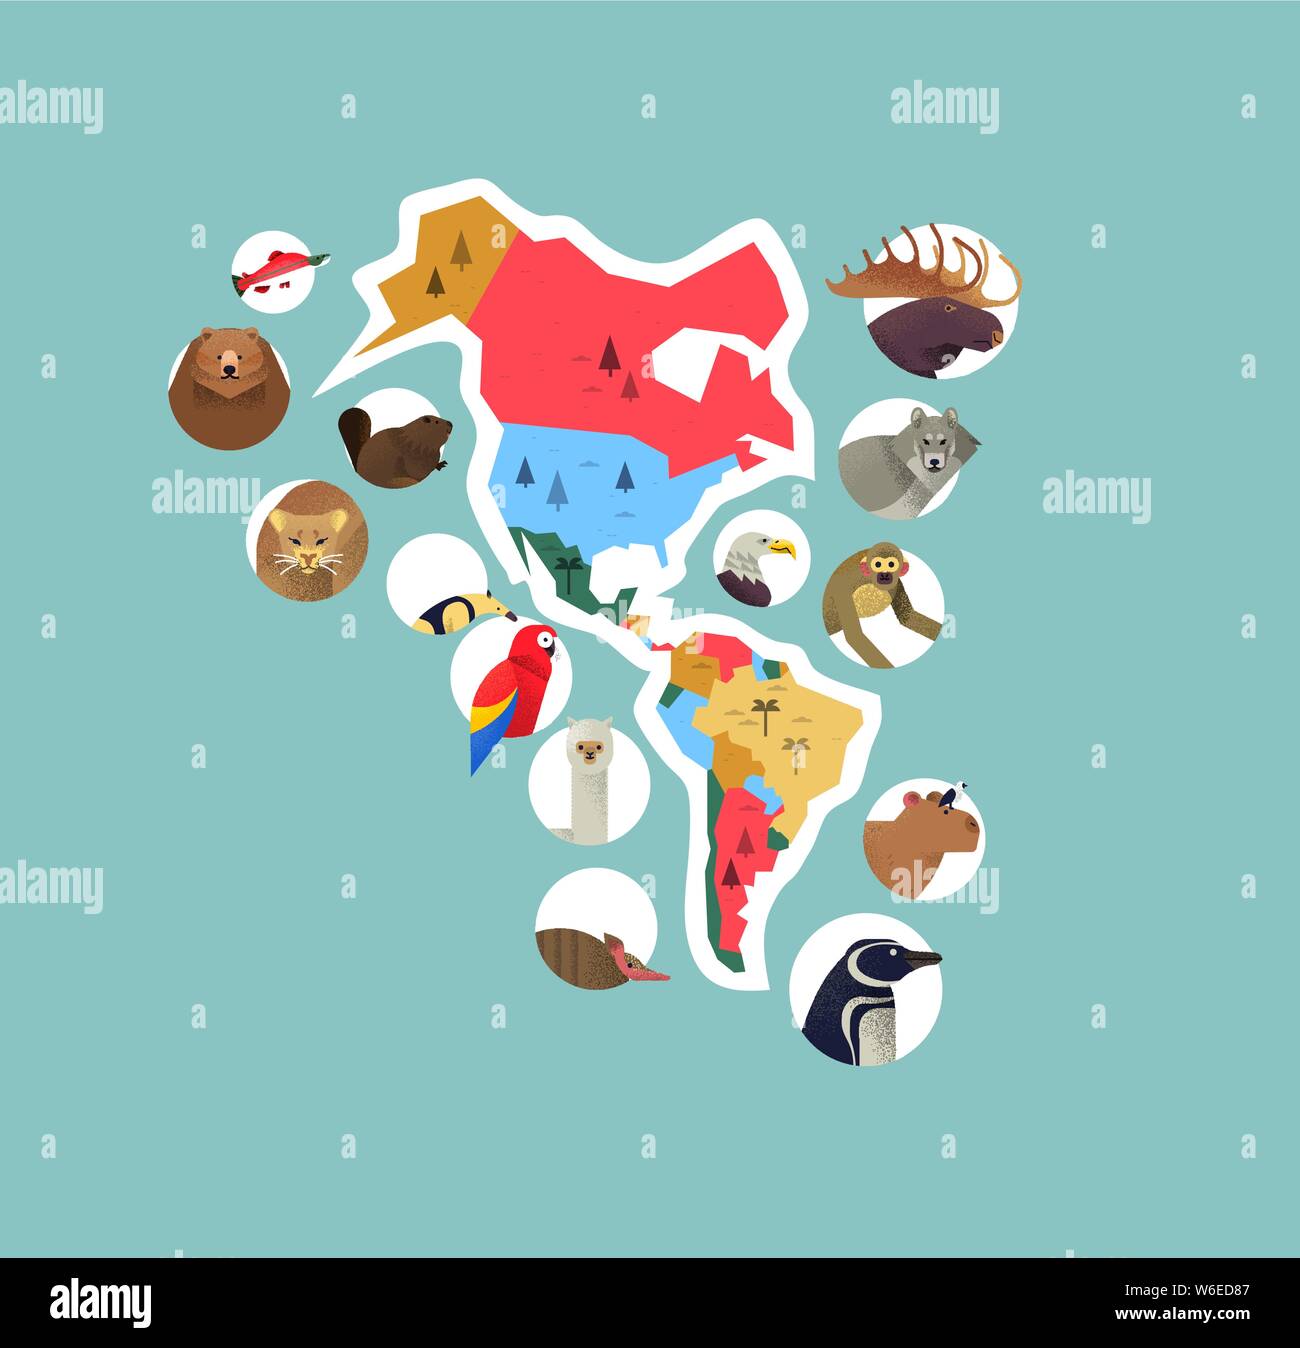 Amerika Kontinent Karten mit wilden Tieren aus Süd- und Nordamerika. Vielfältige Tierwelt Symbole beinhaltet Bär, Affe, Vogel, Wolf, exotischen Fauna. Stock Vektor